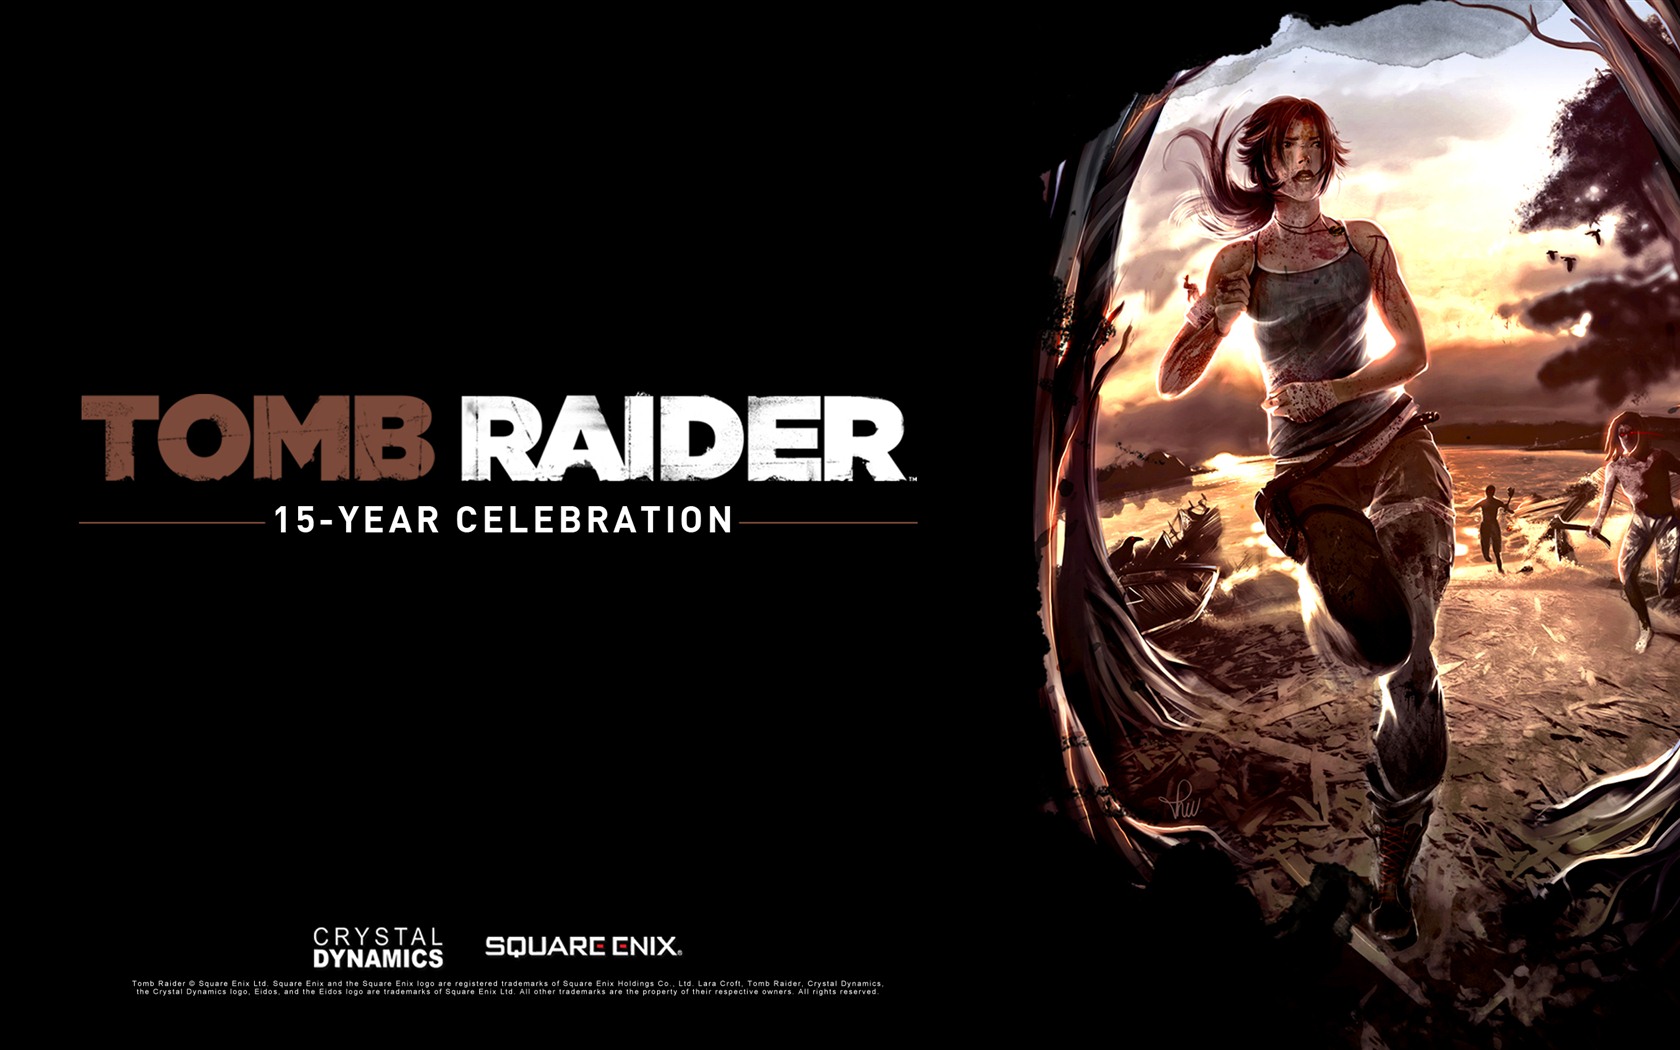 Tomb Raider 15-Year Celebration 古墓丽影15周年纪念版 高清壁纸8 - 1680x1050